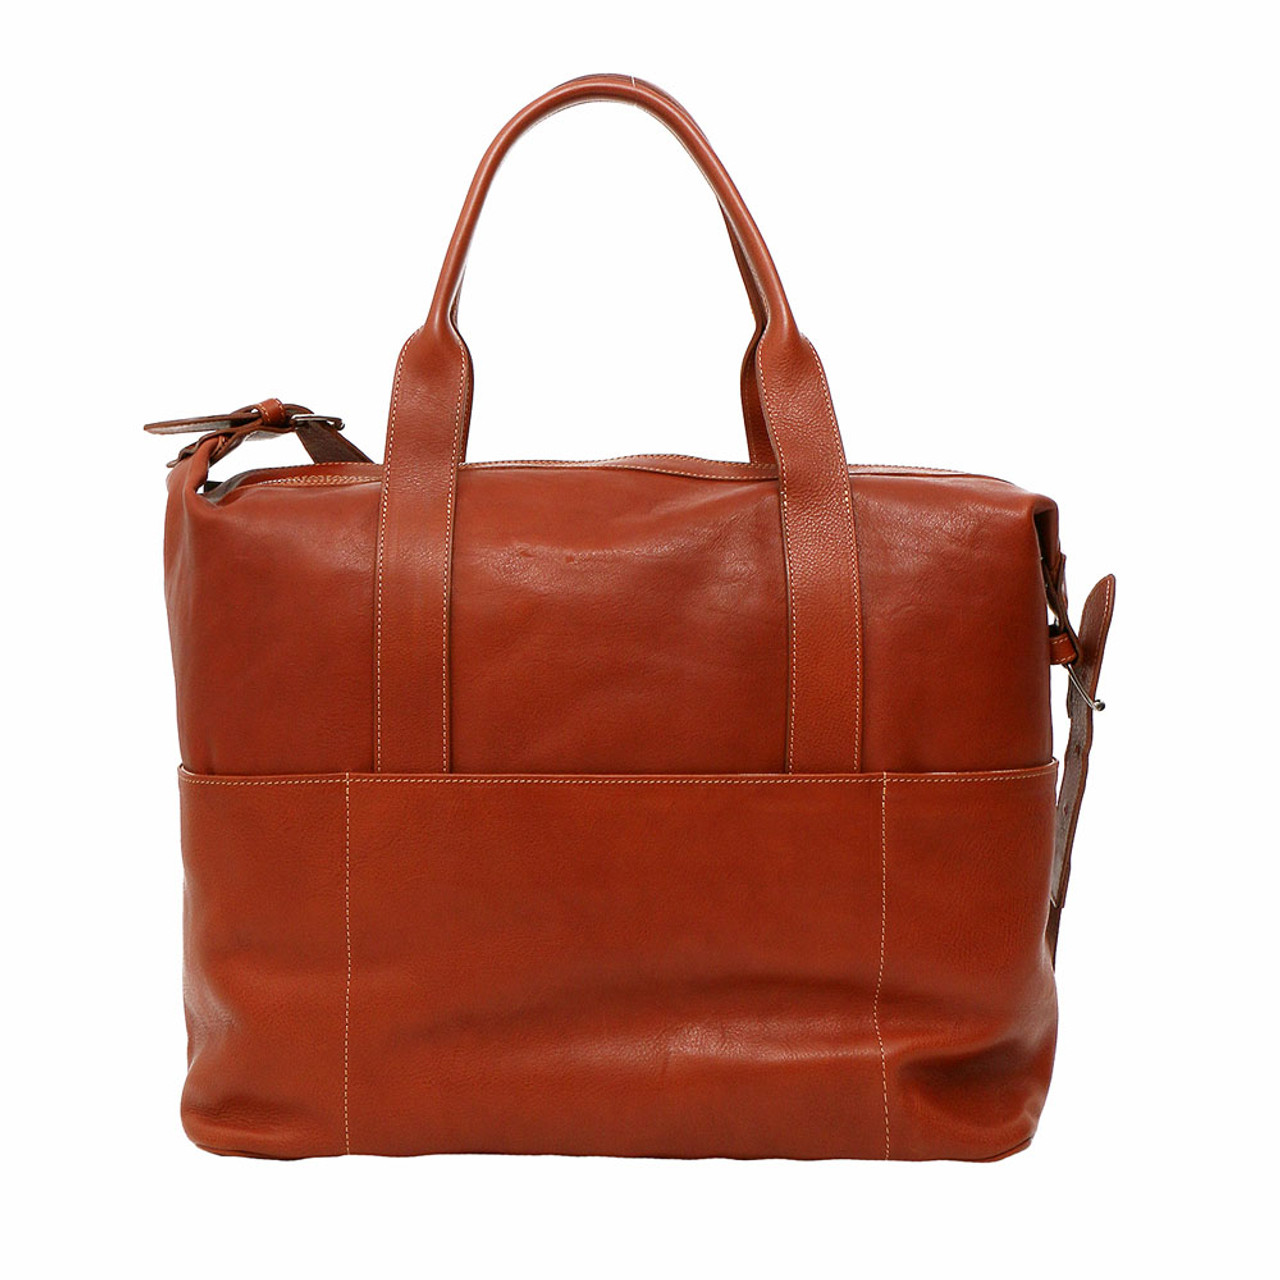 Terrida Berni Italian Leather Travel Tote Bag - Brown